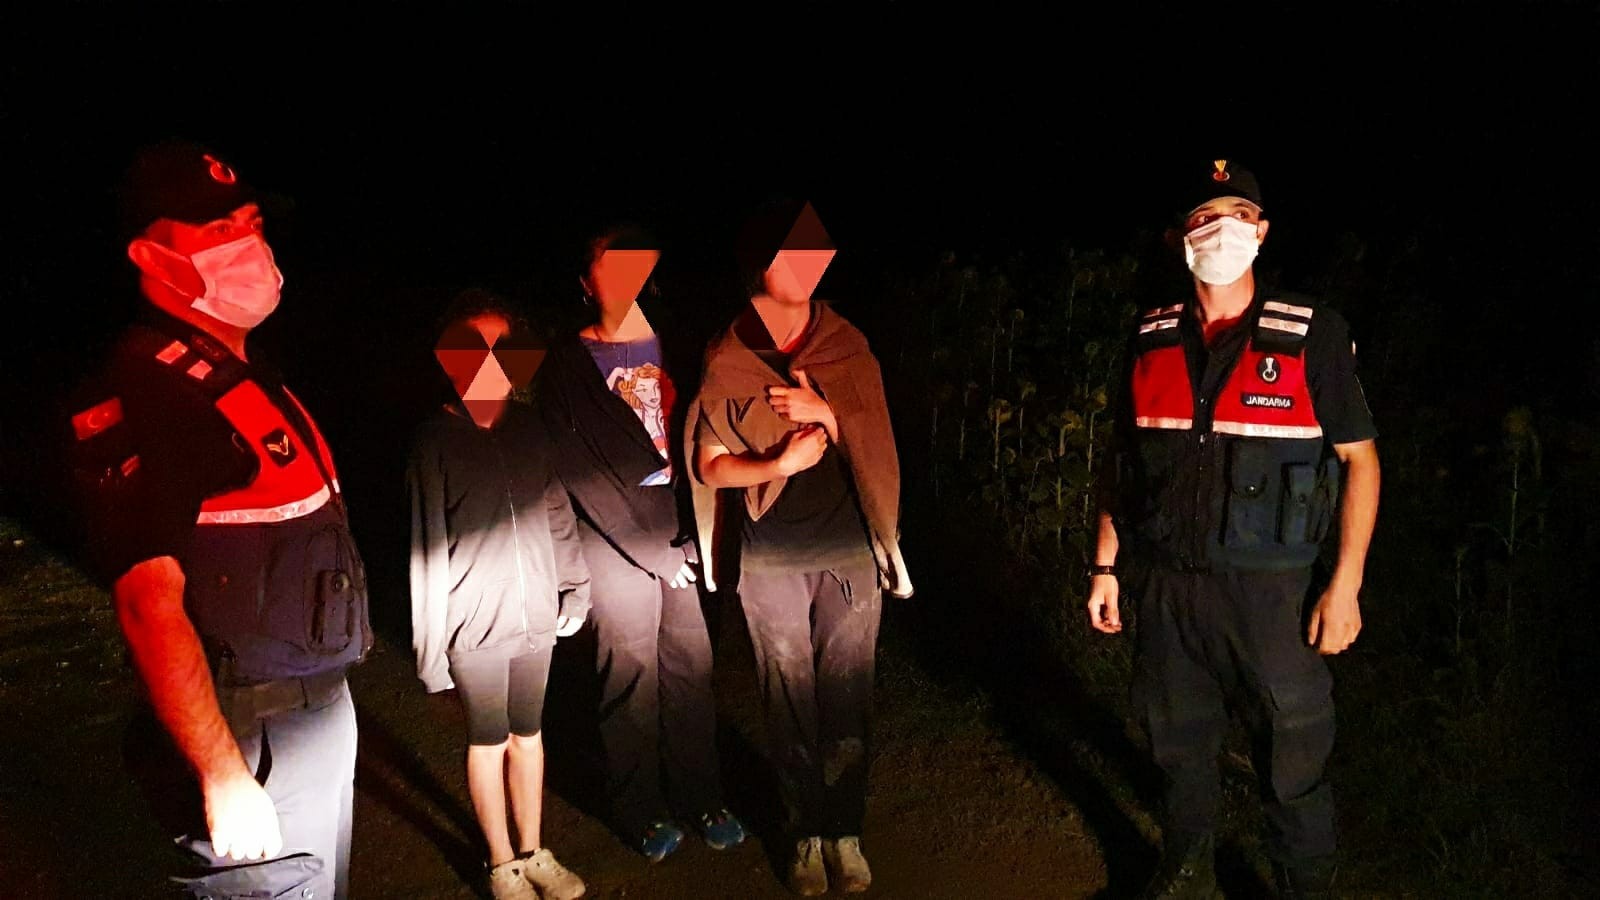 Köpekten korkup mısır tarlasına saklanan 3 çocuğu jandarma buldu